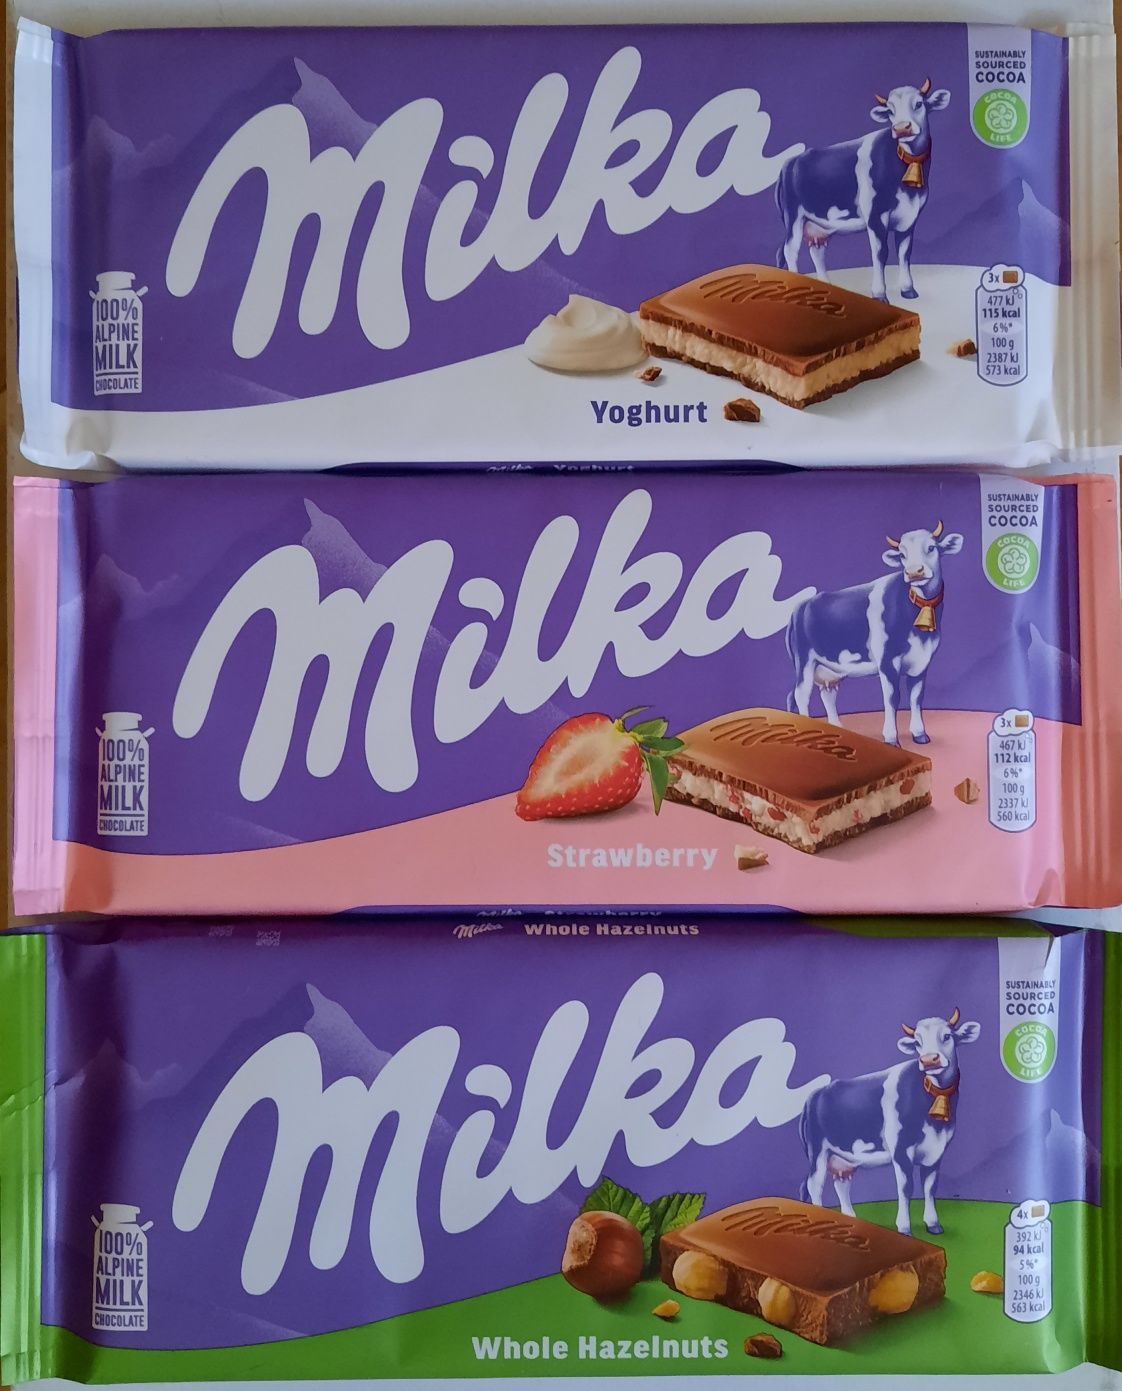 Шоколад Schogetten, Fin carre, Ritter Sport, Milka